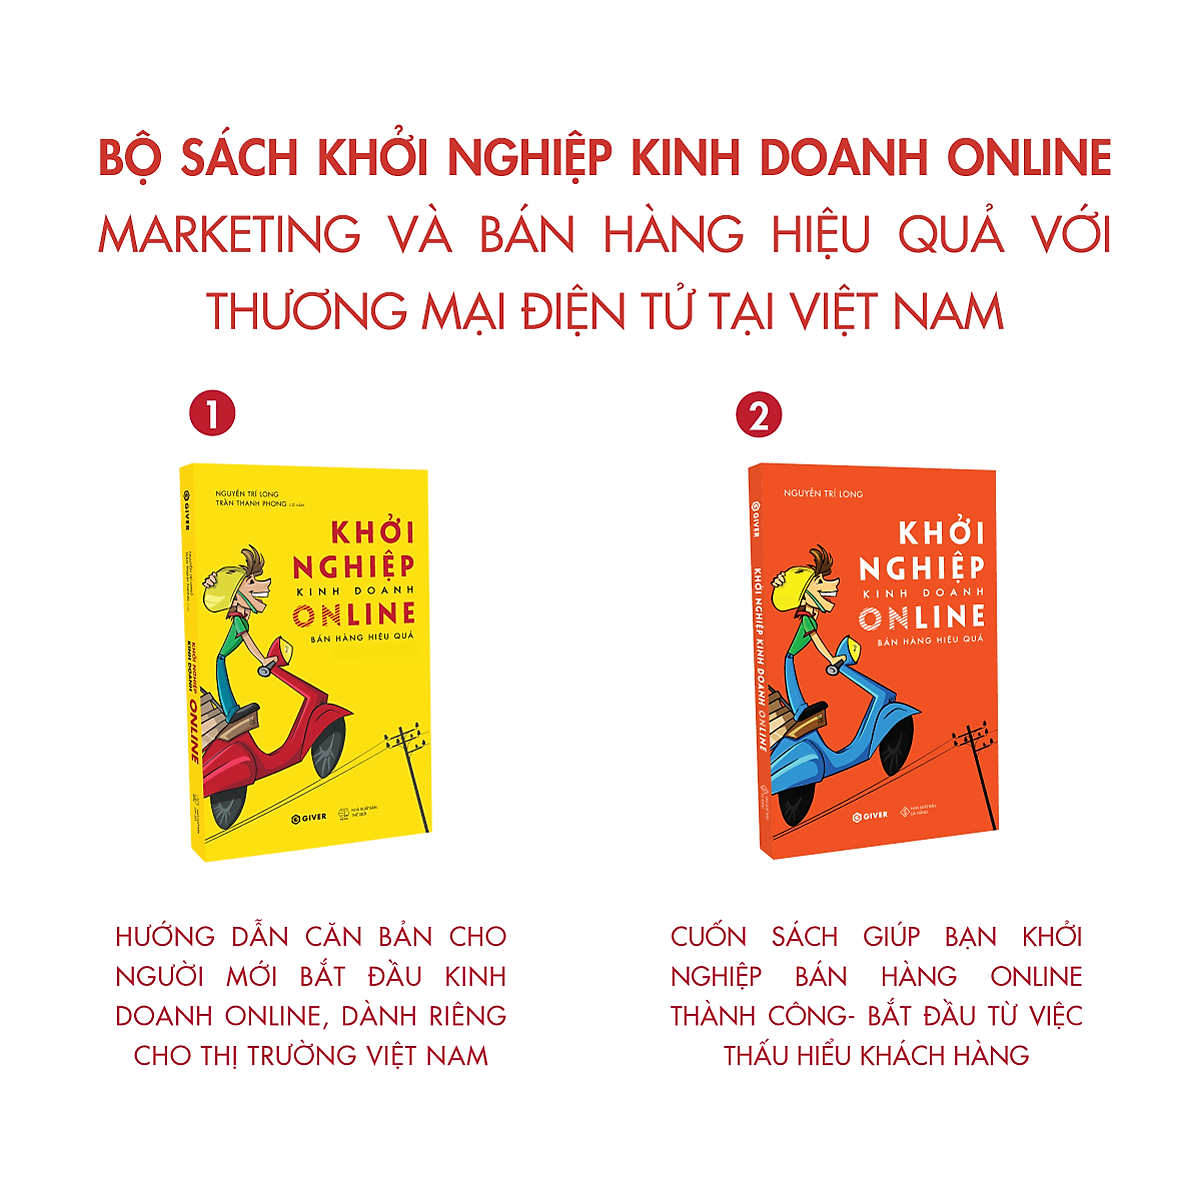 Bộ Sách Khởi Nghiệp Kinh Doanh Online - Marketing và Bán Hàng Hiệu Quả Với Thương Mại Điện Tử Tại Việt Nam